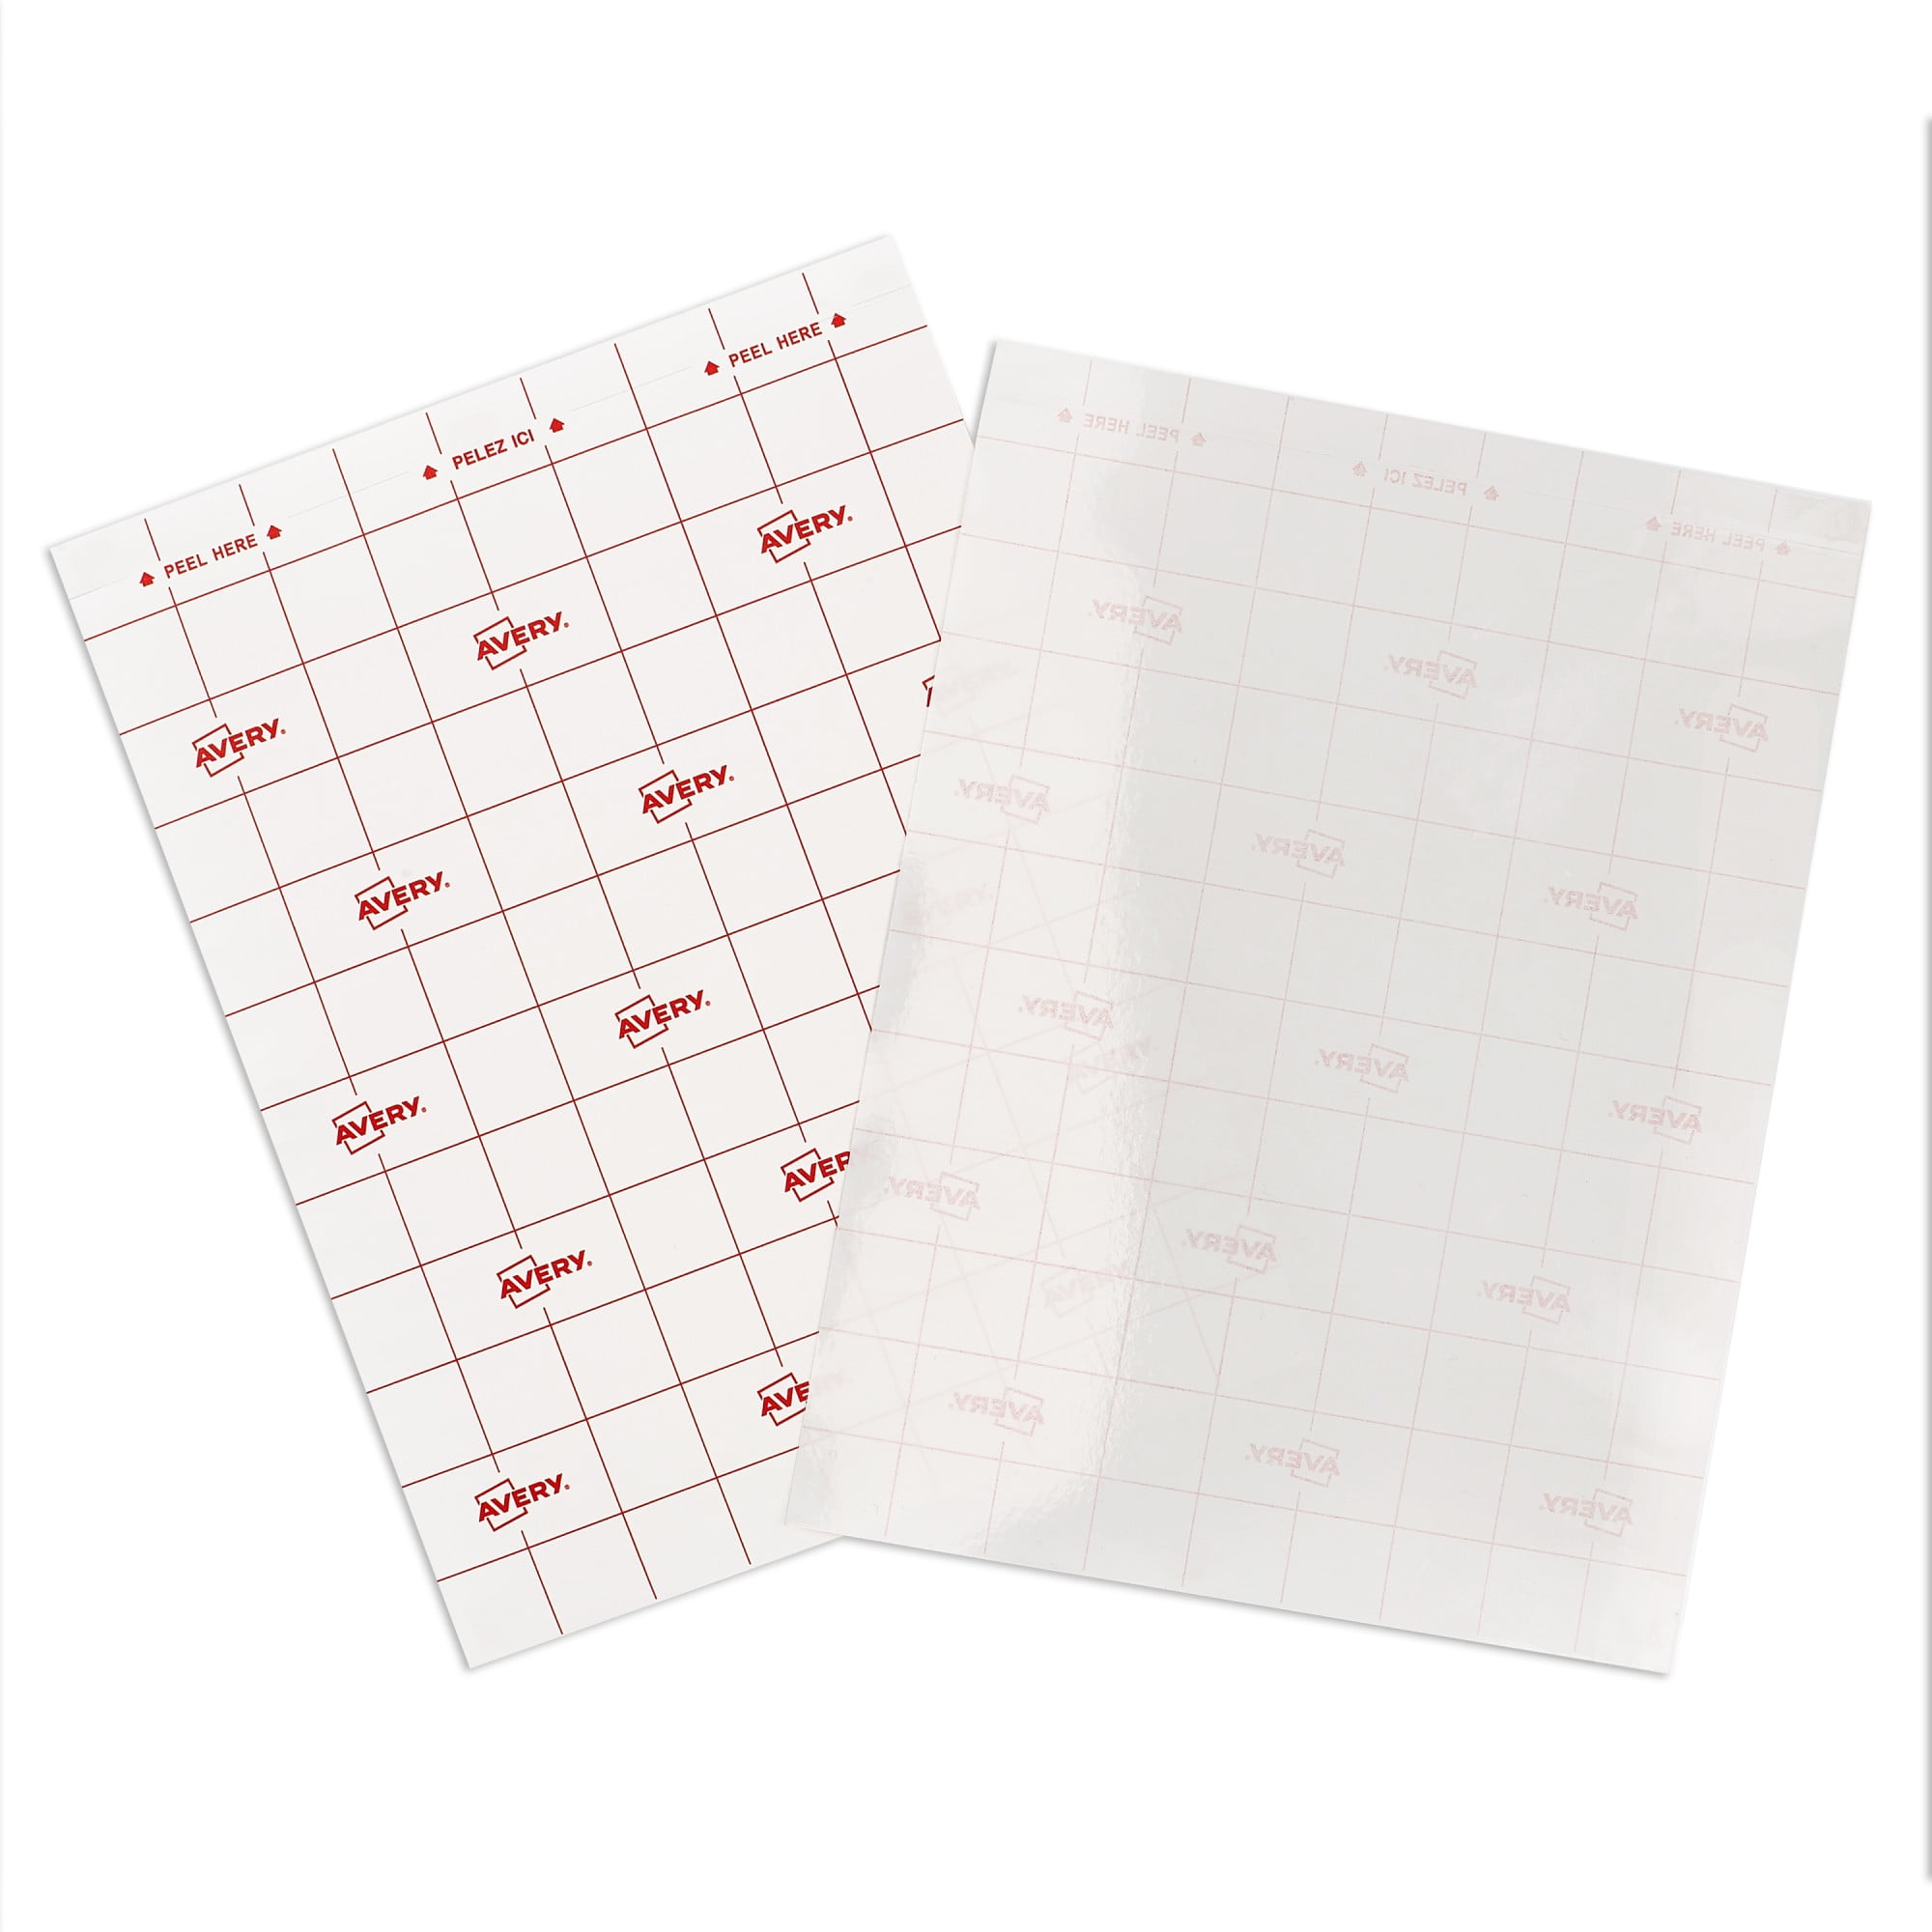 Avery® Clear Laminating Sheets, 9 x 12, Permanent Self-Adhesive, 50  Sheets (73601)